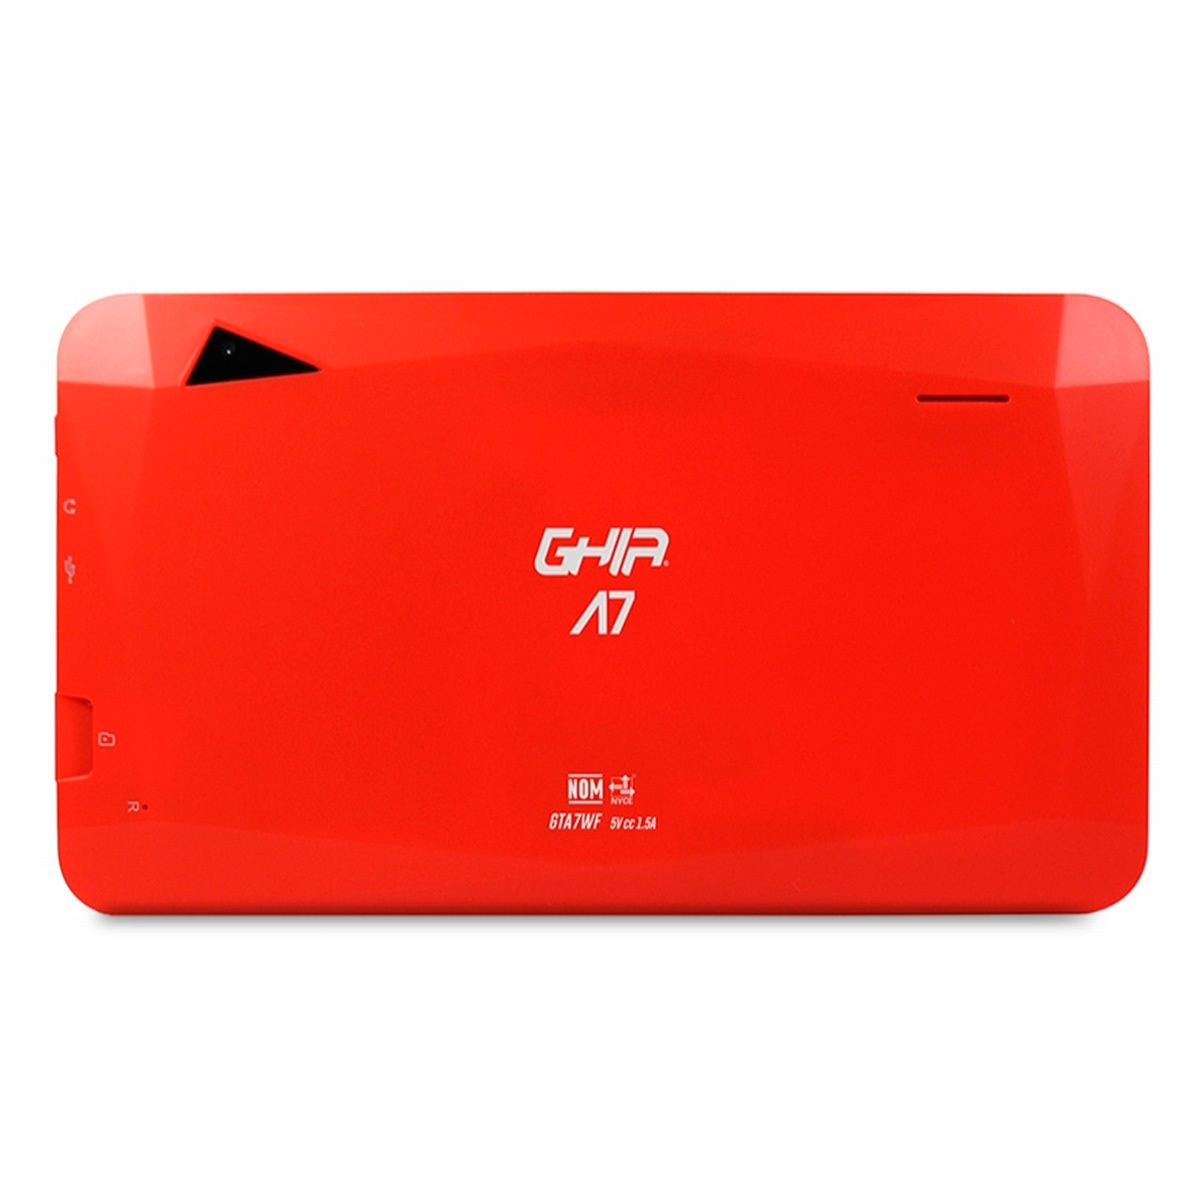 Tablet Ghia Kids Notghia 287 Negro con rojo 7 pulgadas